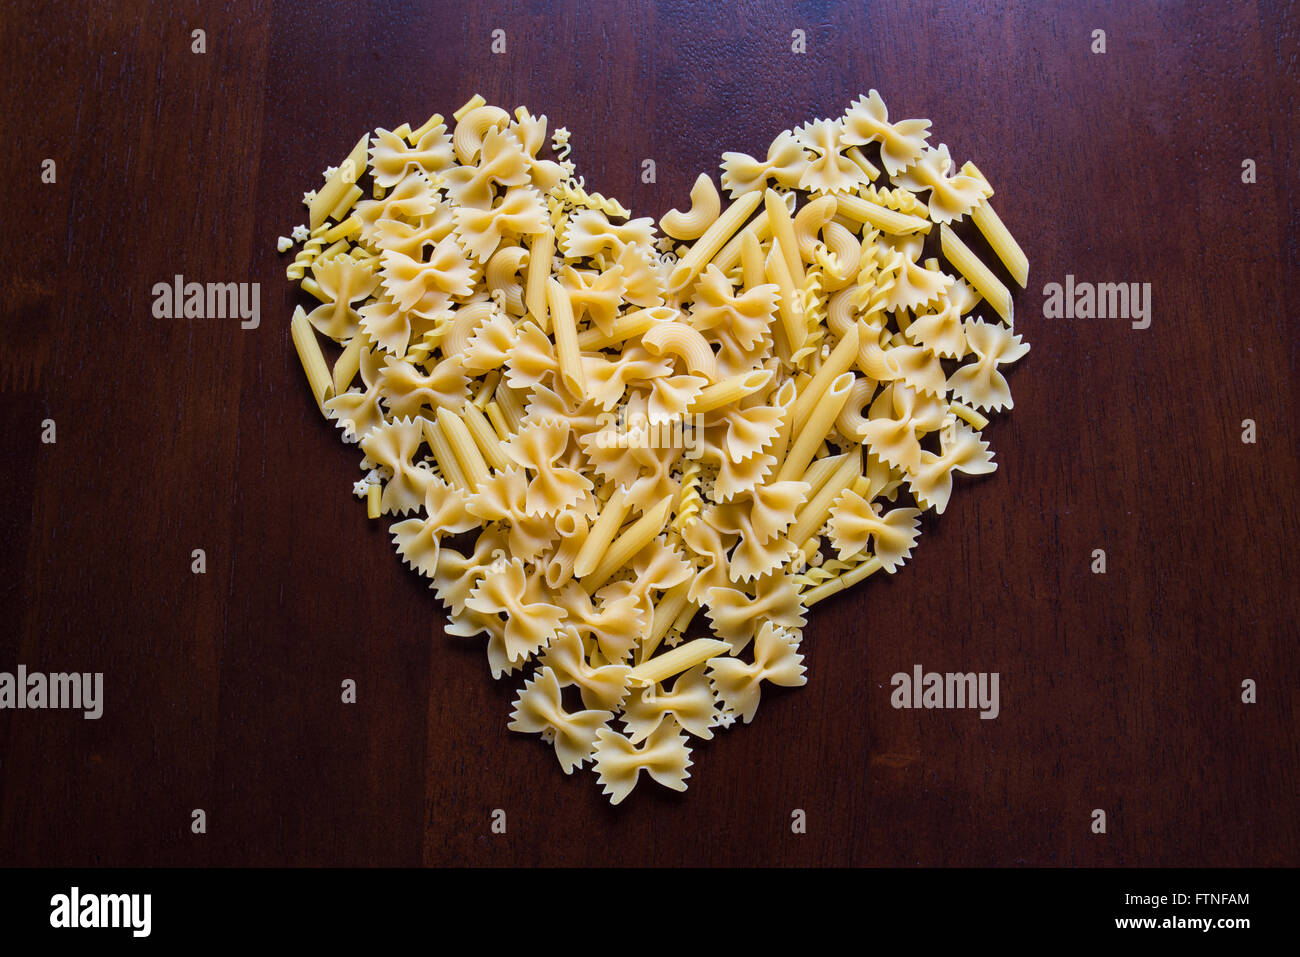 Un piatto con una pasta a forma di cuore con sopra una pasta a forma di  cuore.